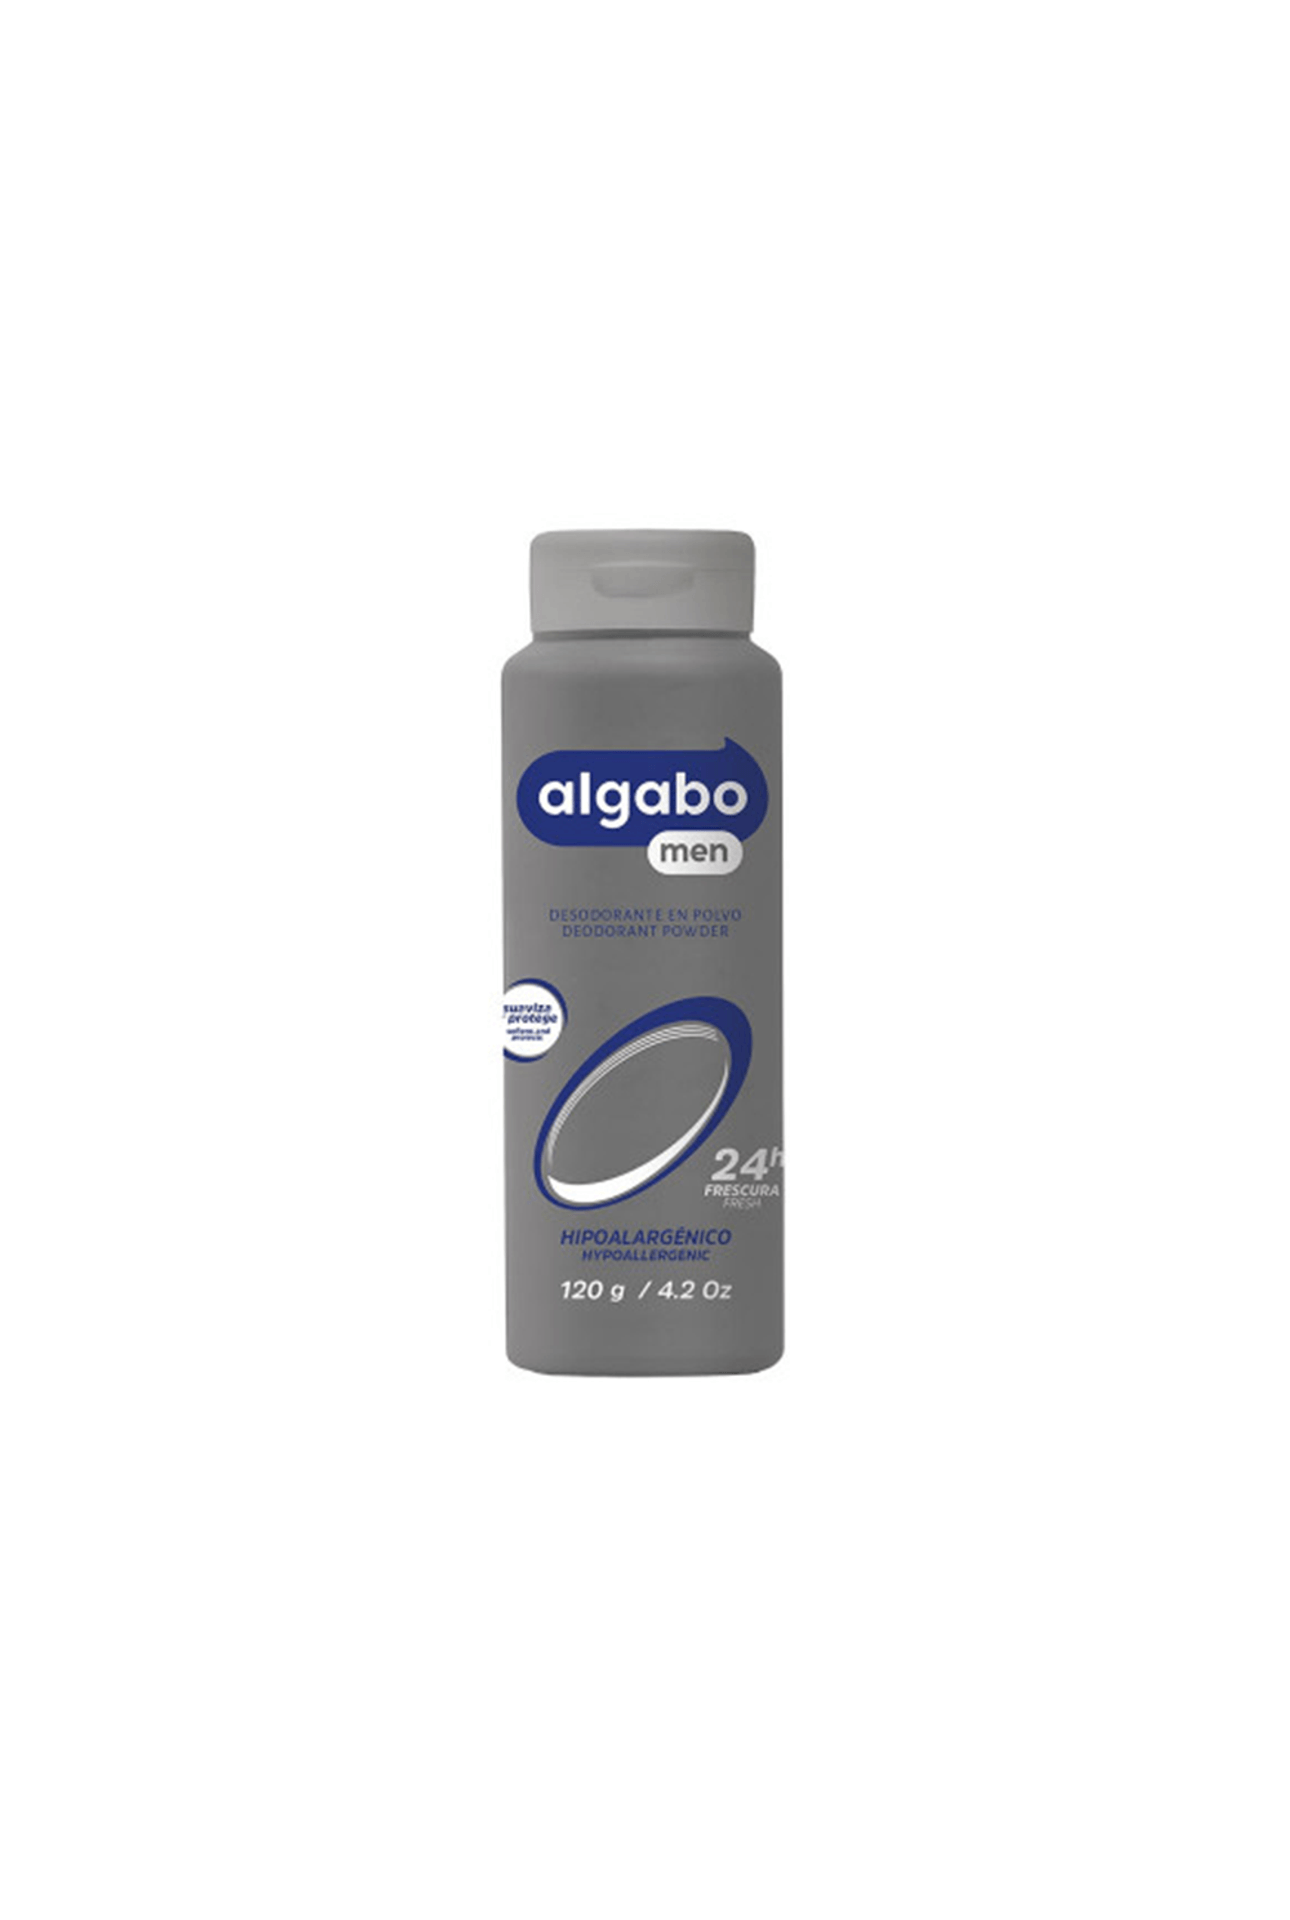 Algabo-Talco-Corporal-Algabo-Men-x-120-gr-7791274198137_img1